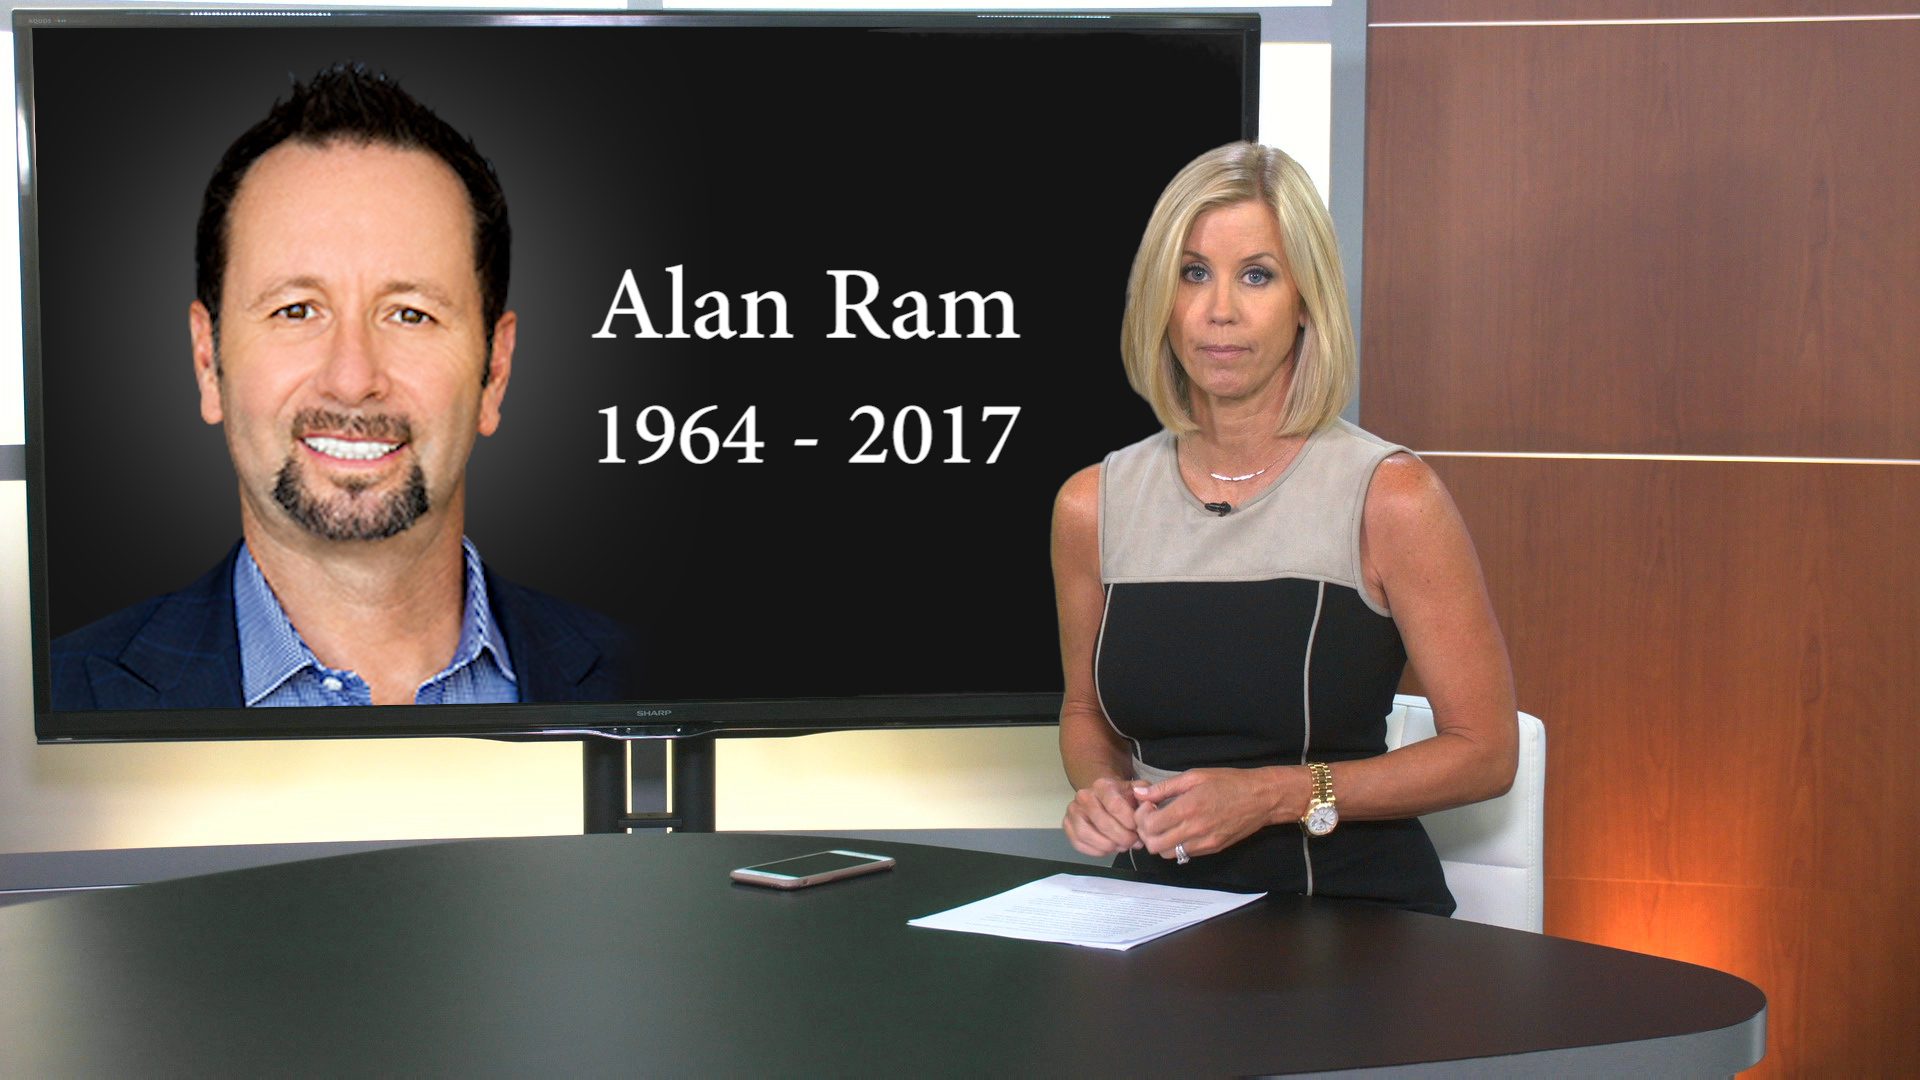 Alan Ram Sales Trainer Dies